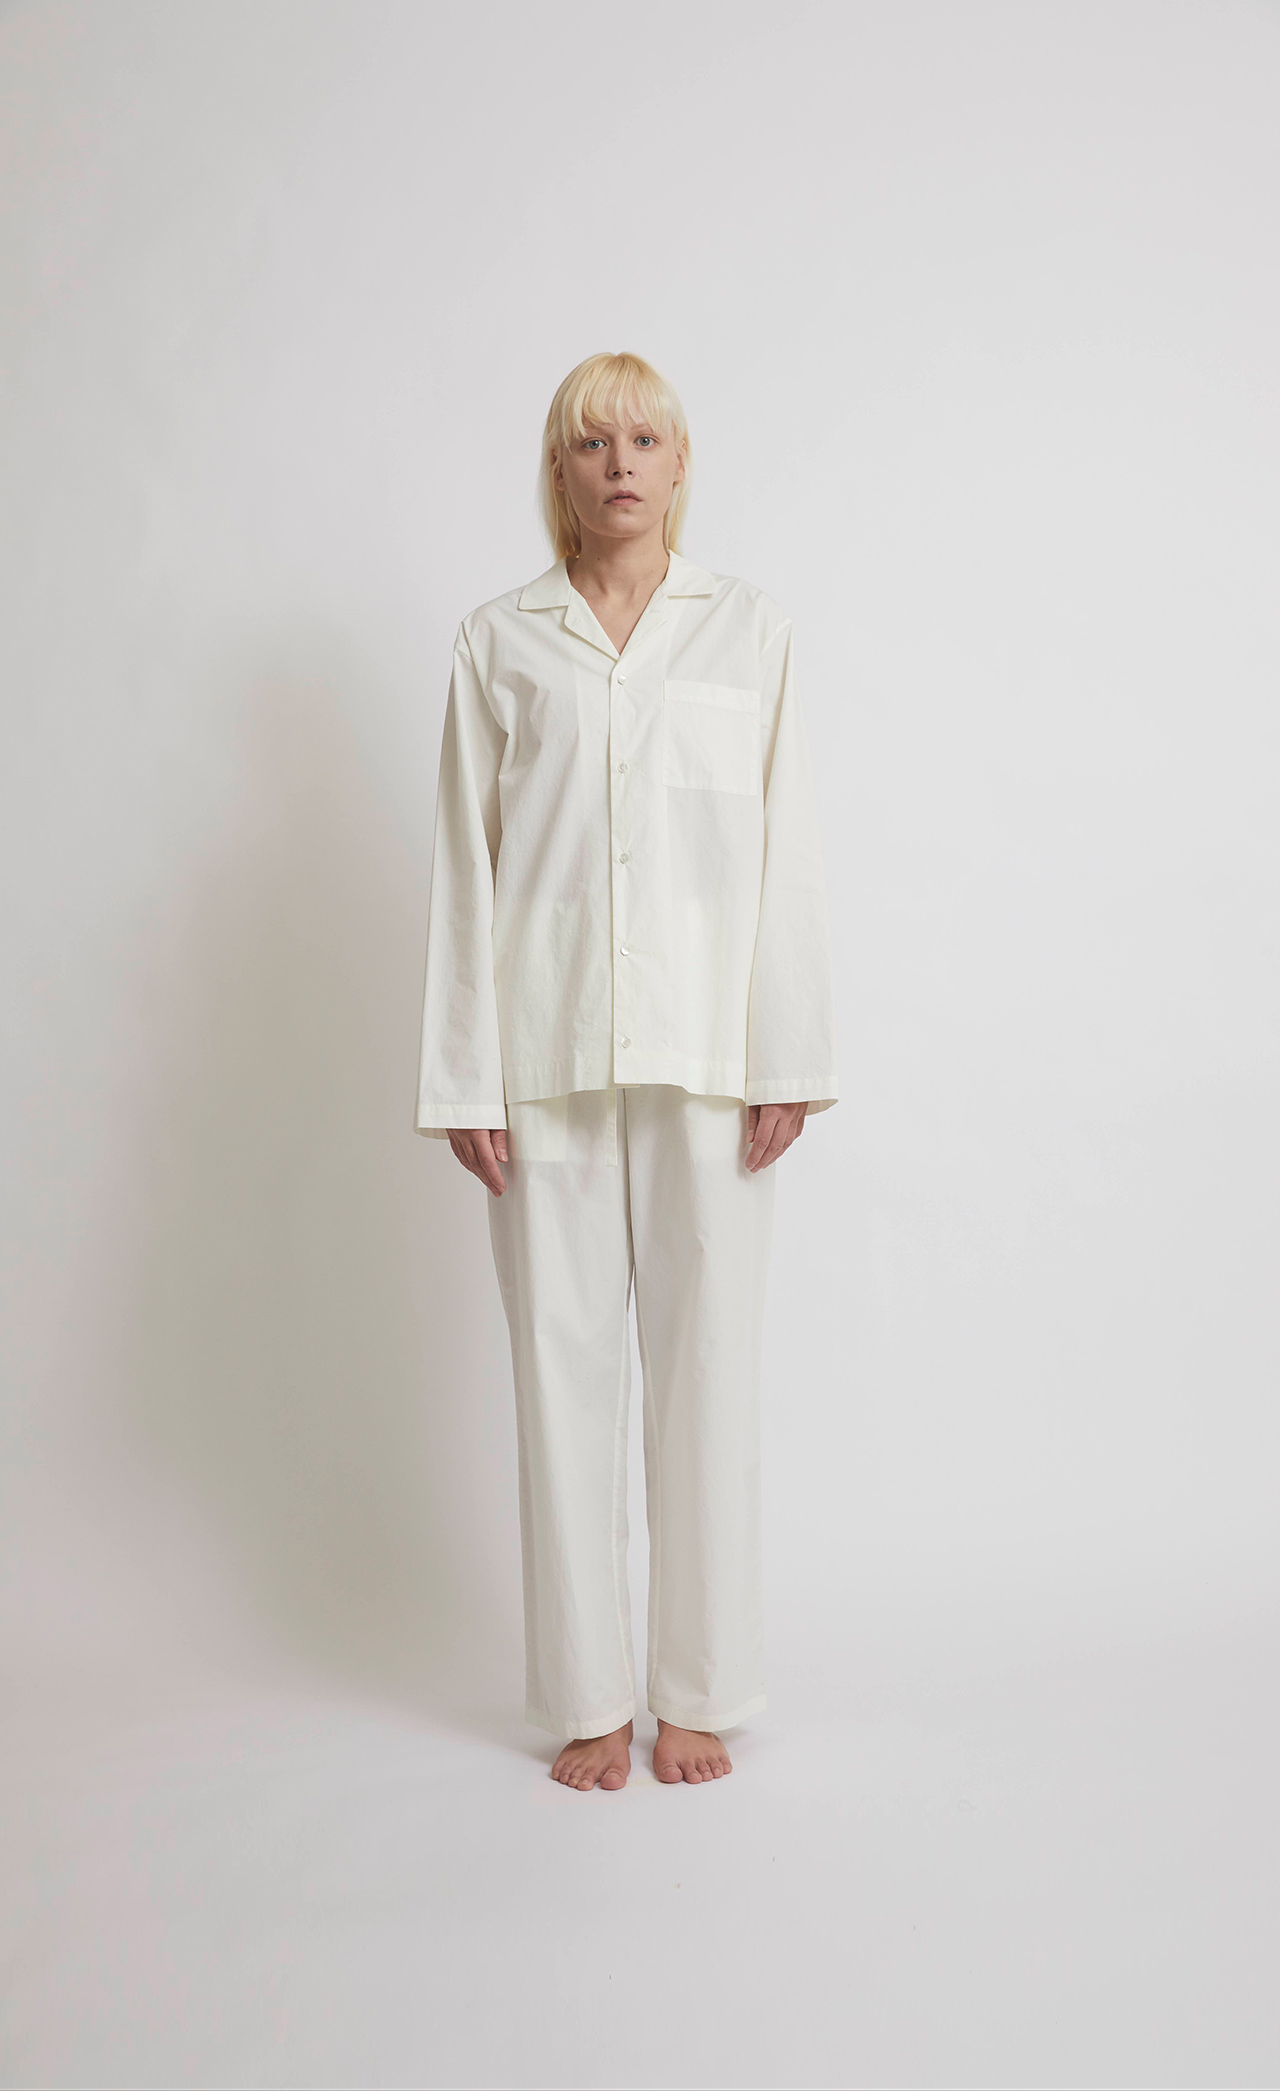 <div class="mobile-02-title";>100% Cotton Pajamas for Unisex</div>